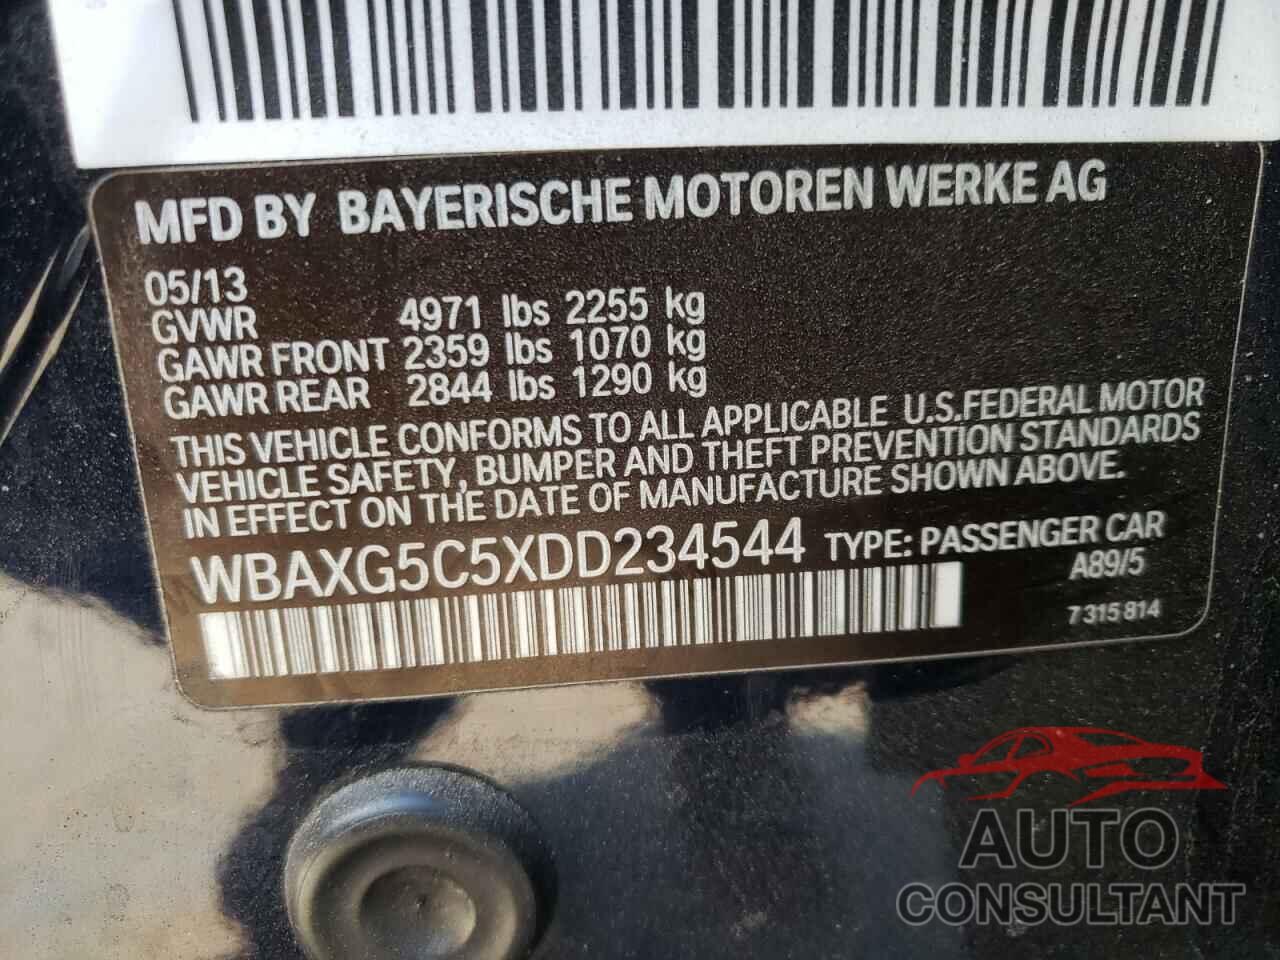 BMW 5 SERIES 2013 - WBAXG5C5XDD234544